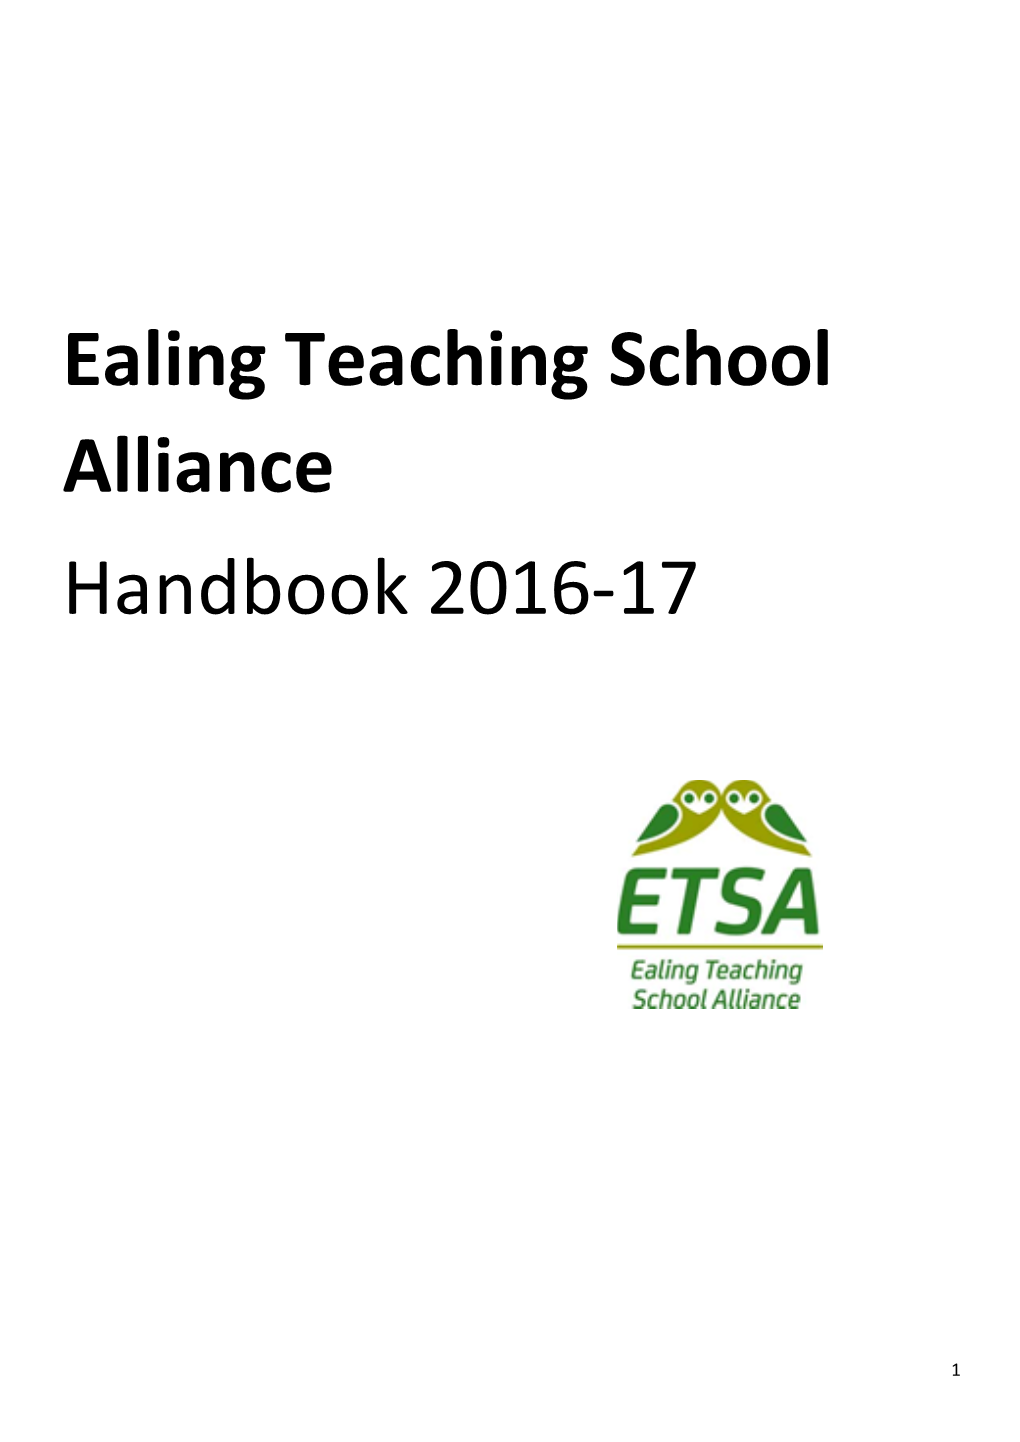 Ealing Teaching School Alliance Handbook 2016-17